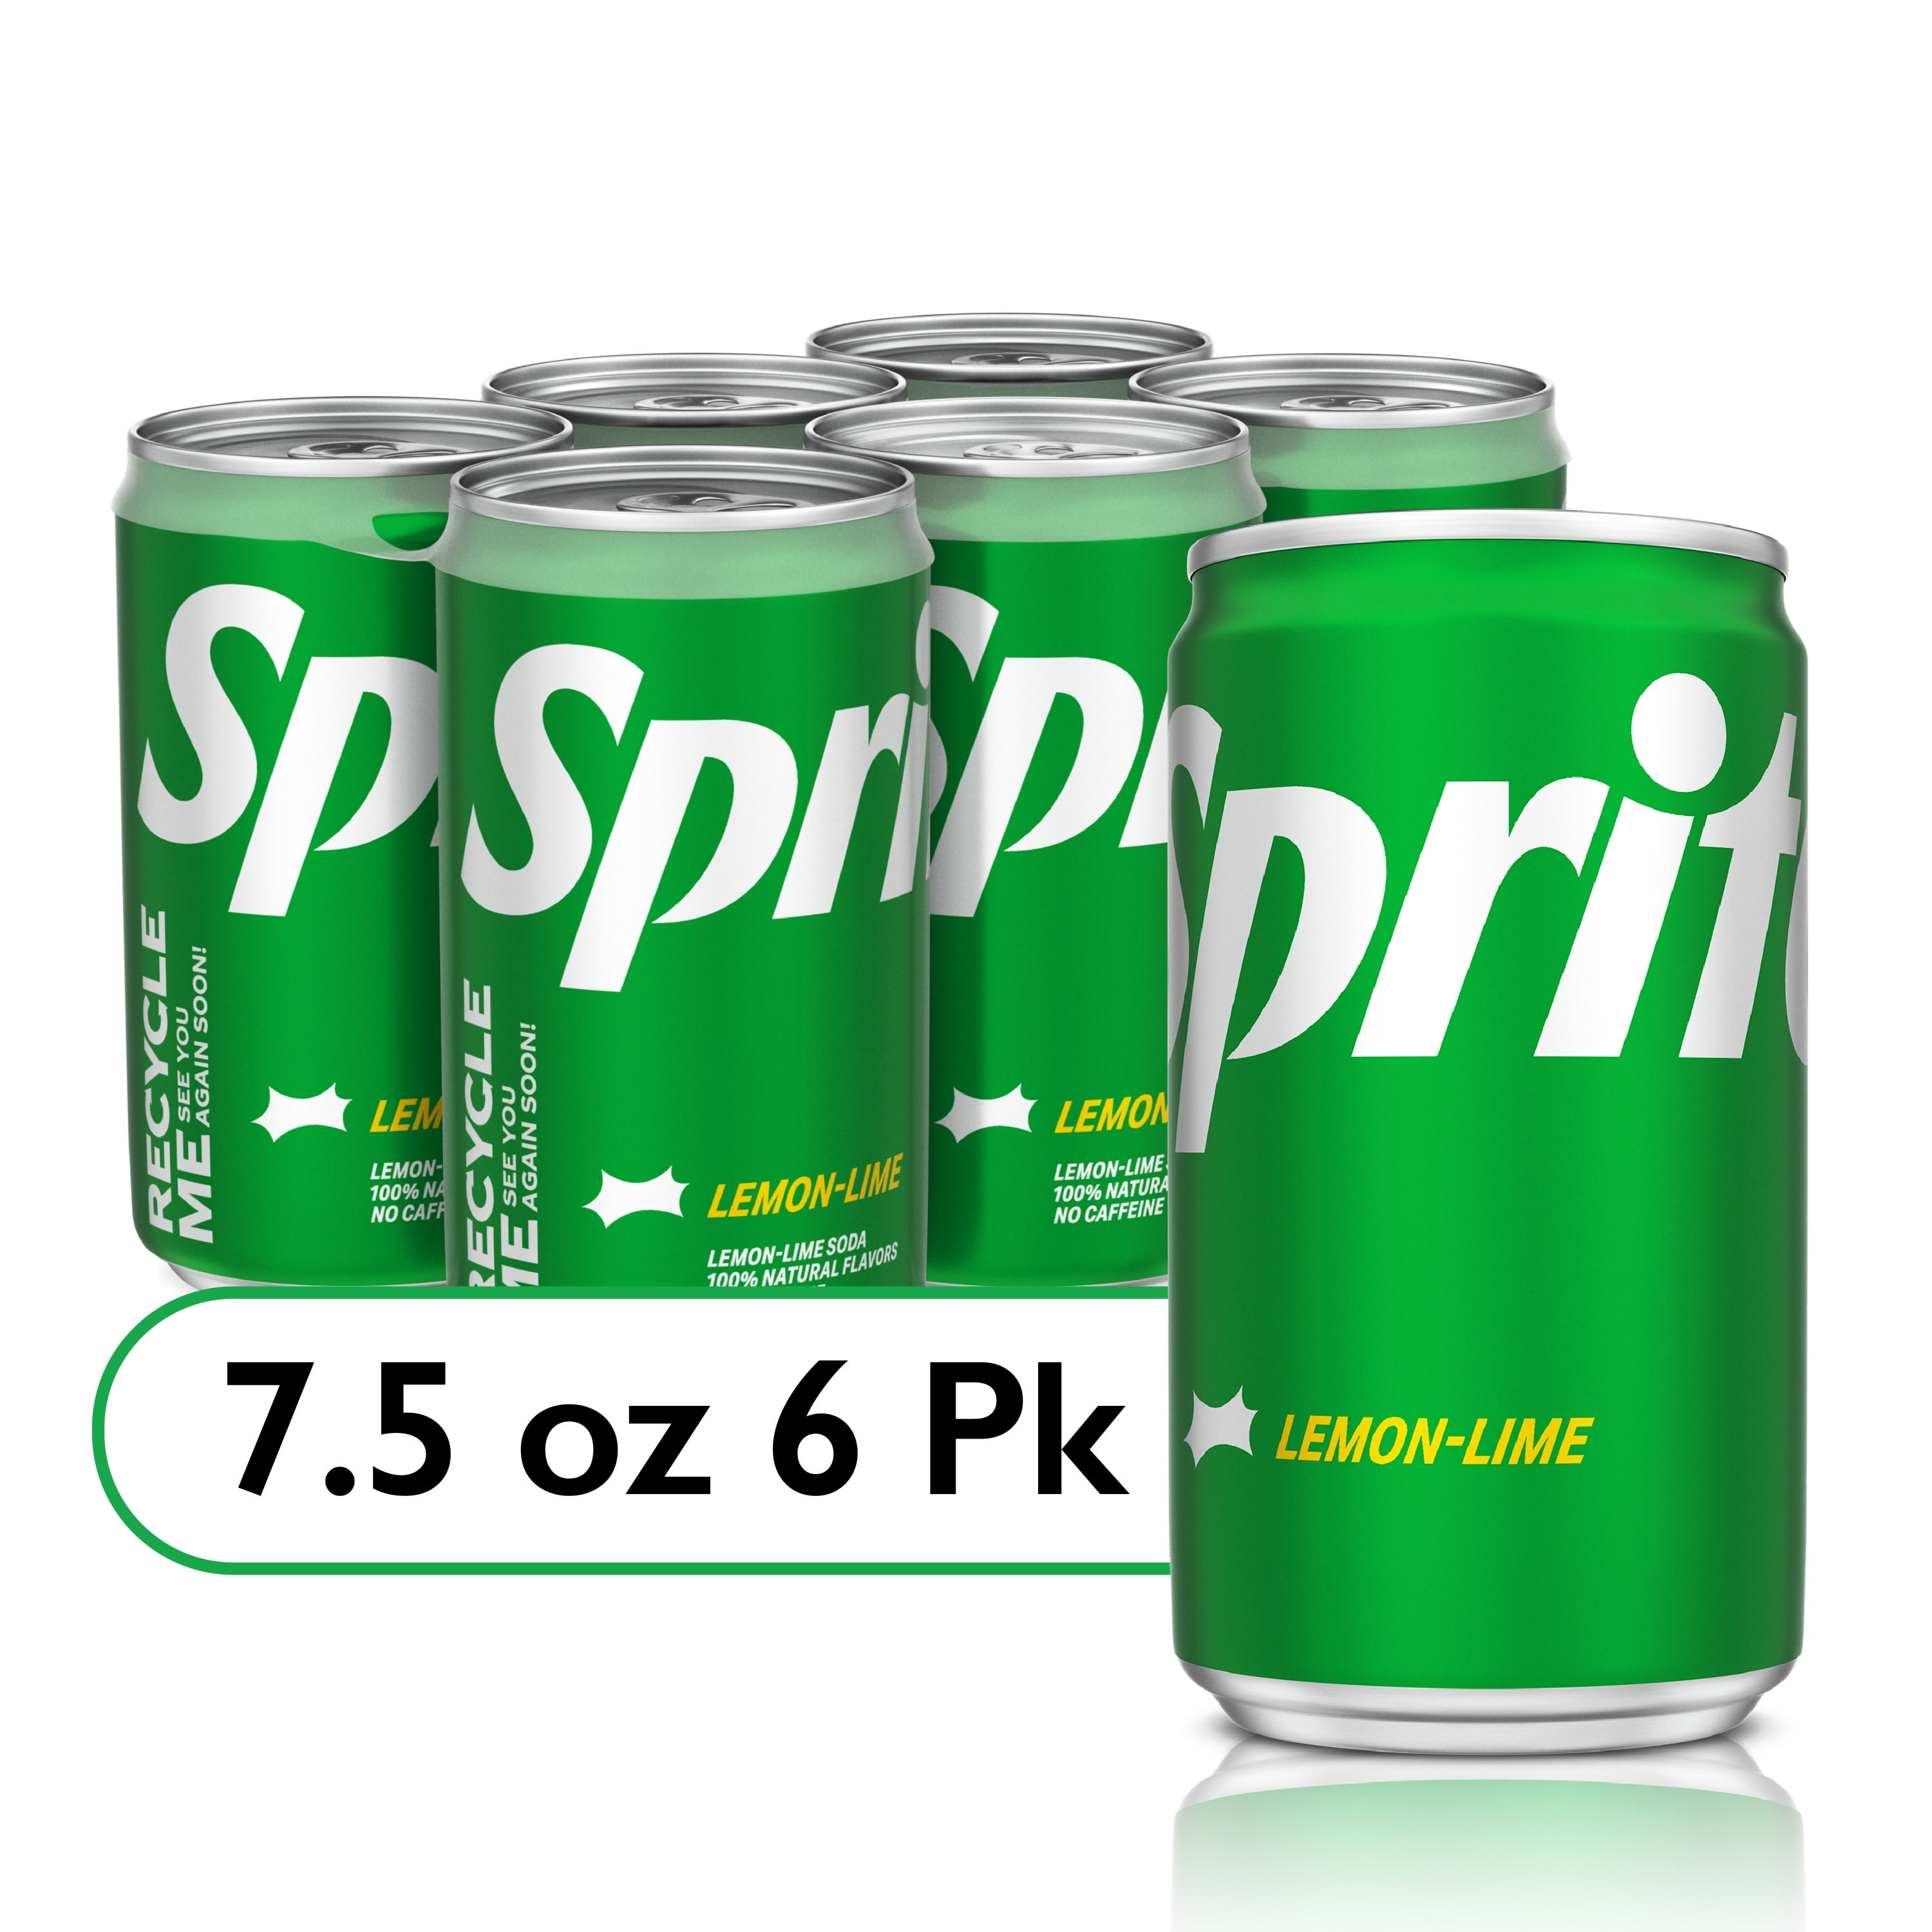 7UP Lemon Lime Soda Pop, 7.5 fl oz, 6 Pack Cans 